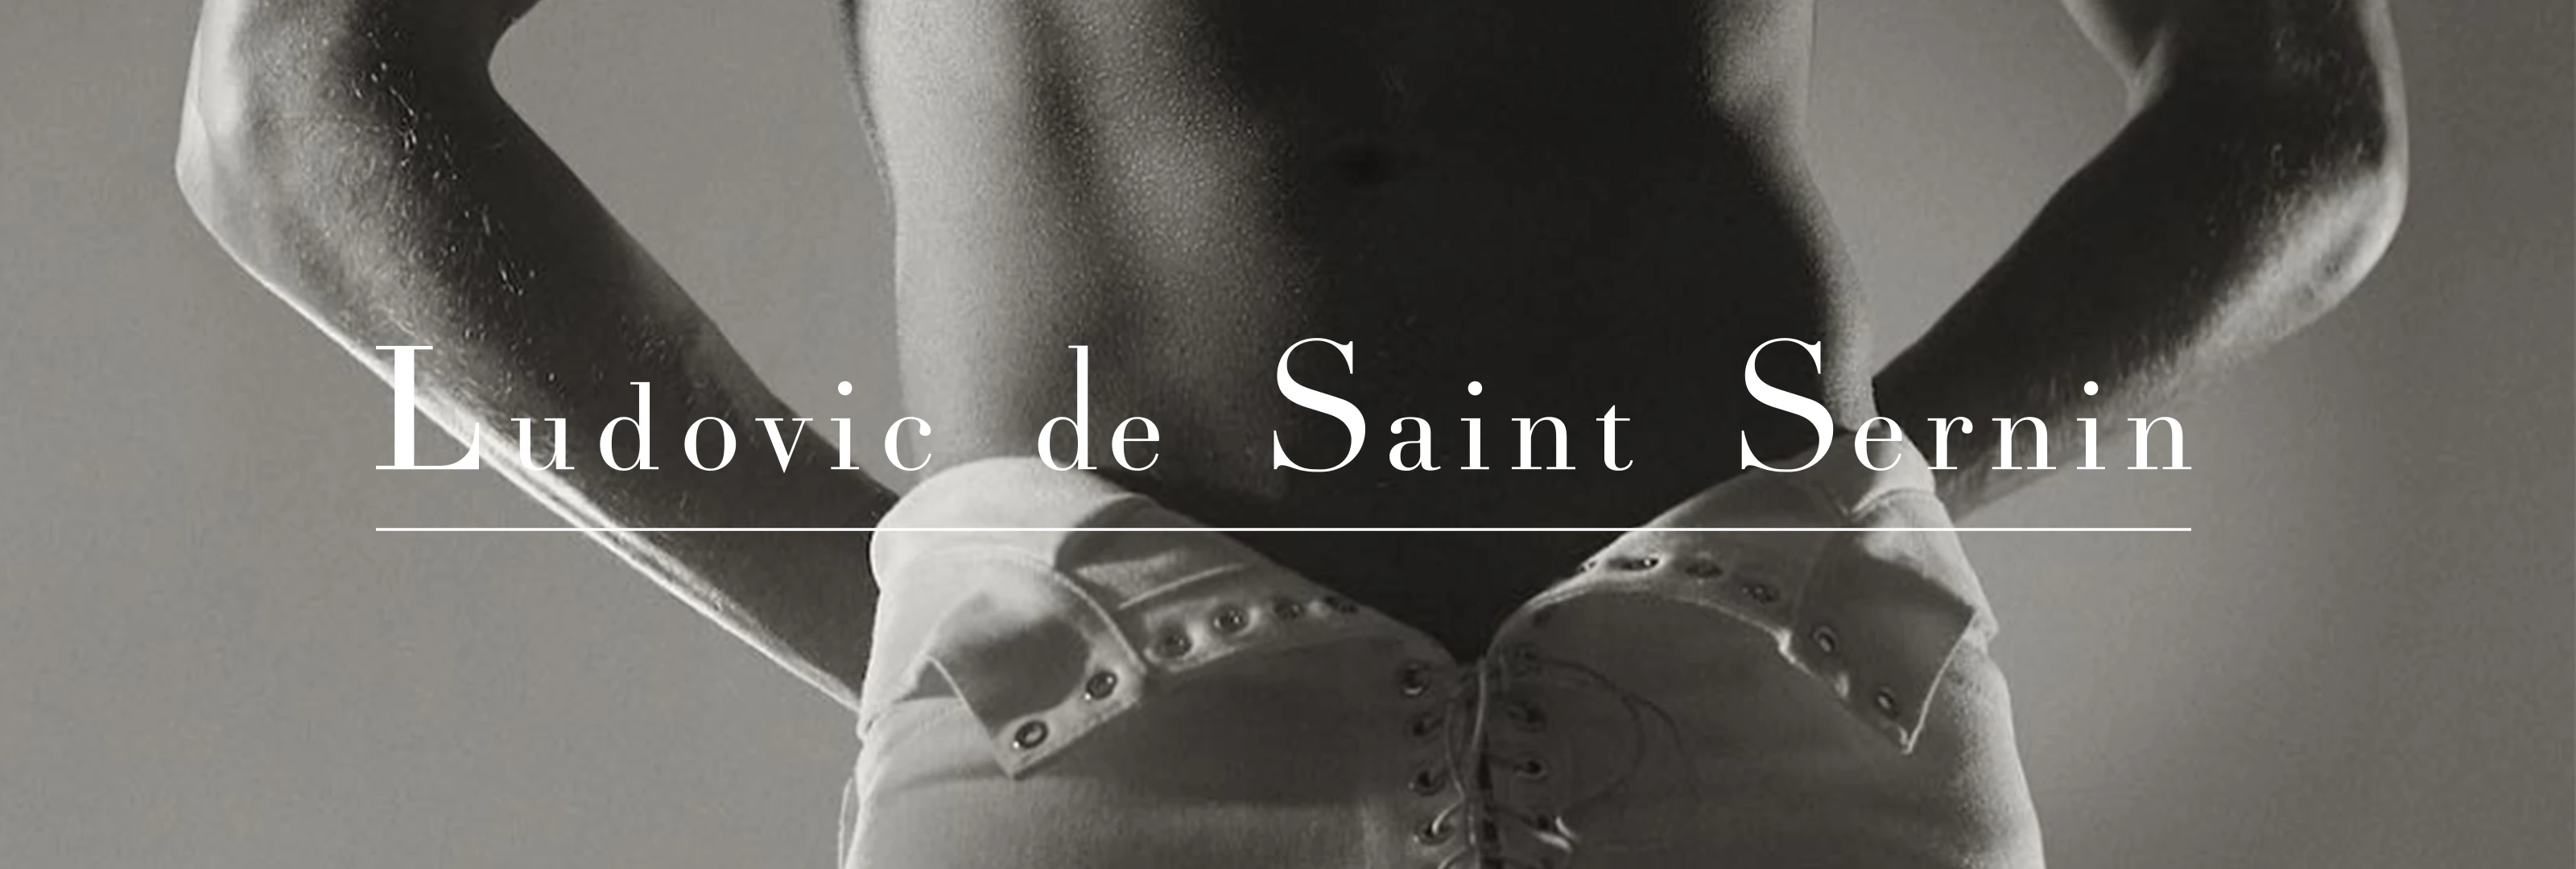 Who is Ludovic de Saint Sernin?